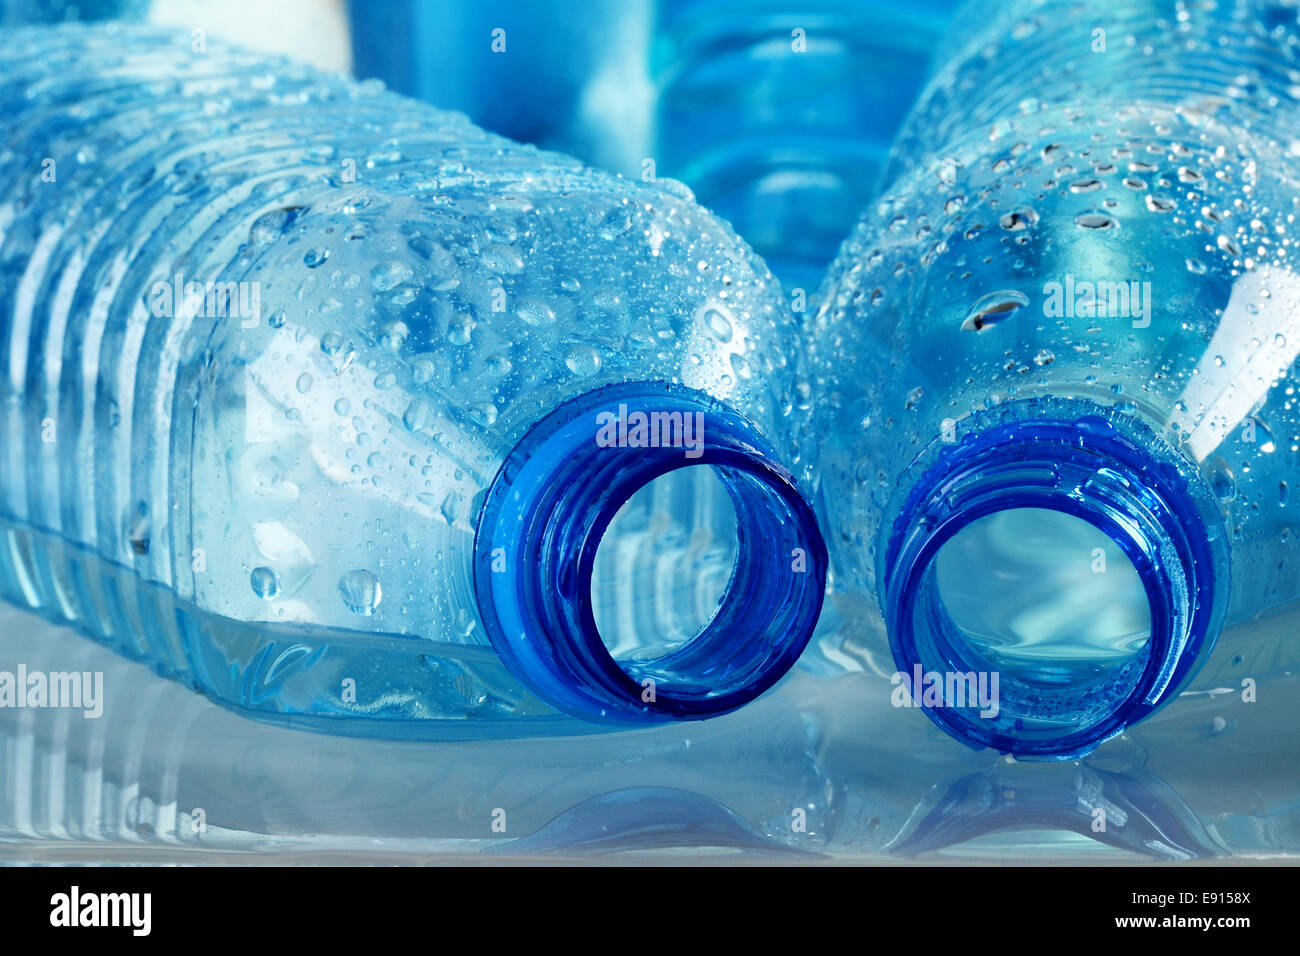 Las botellas de plástico de agua mineral. Foto de stock